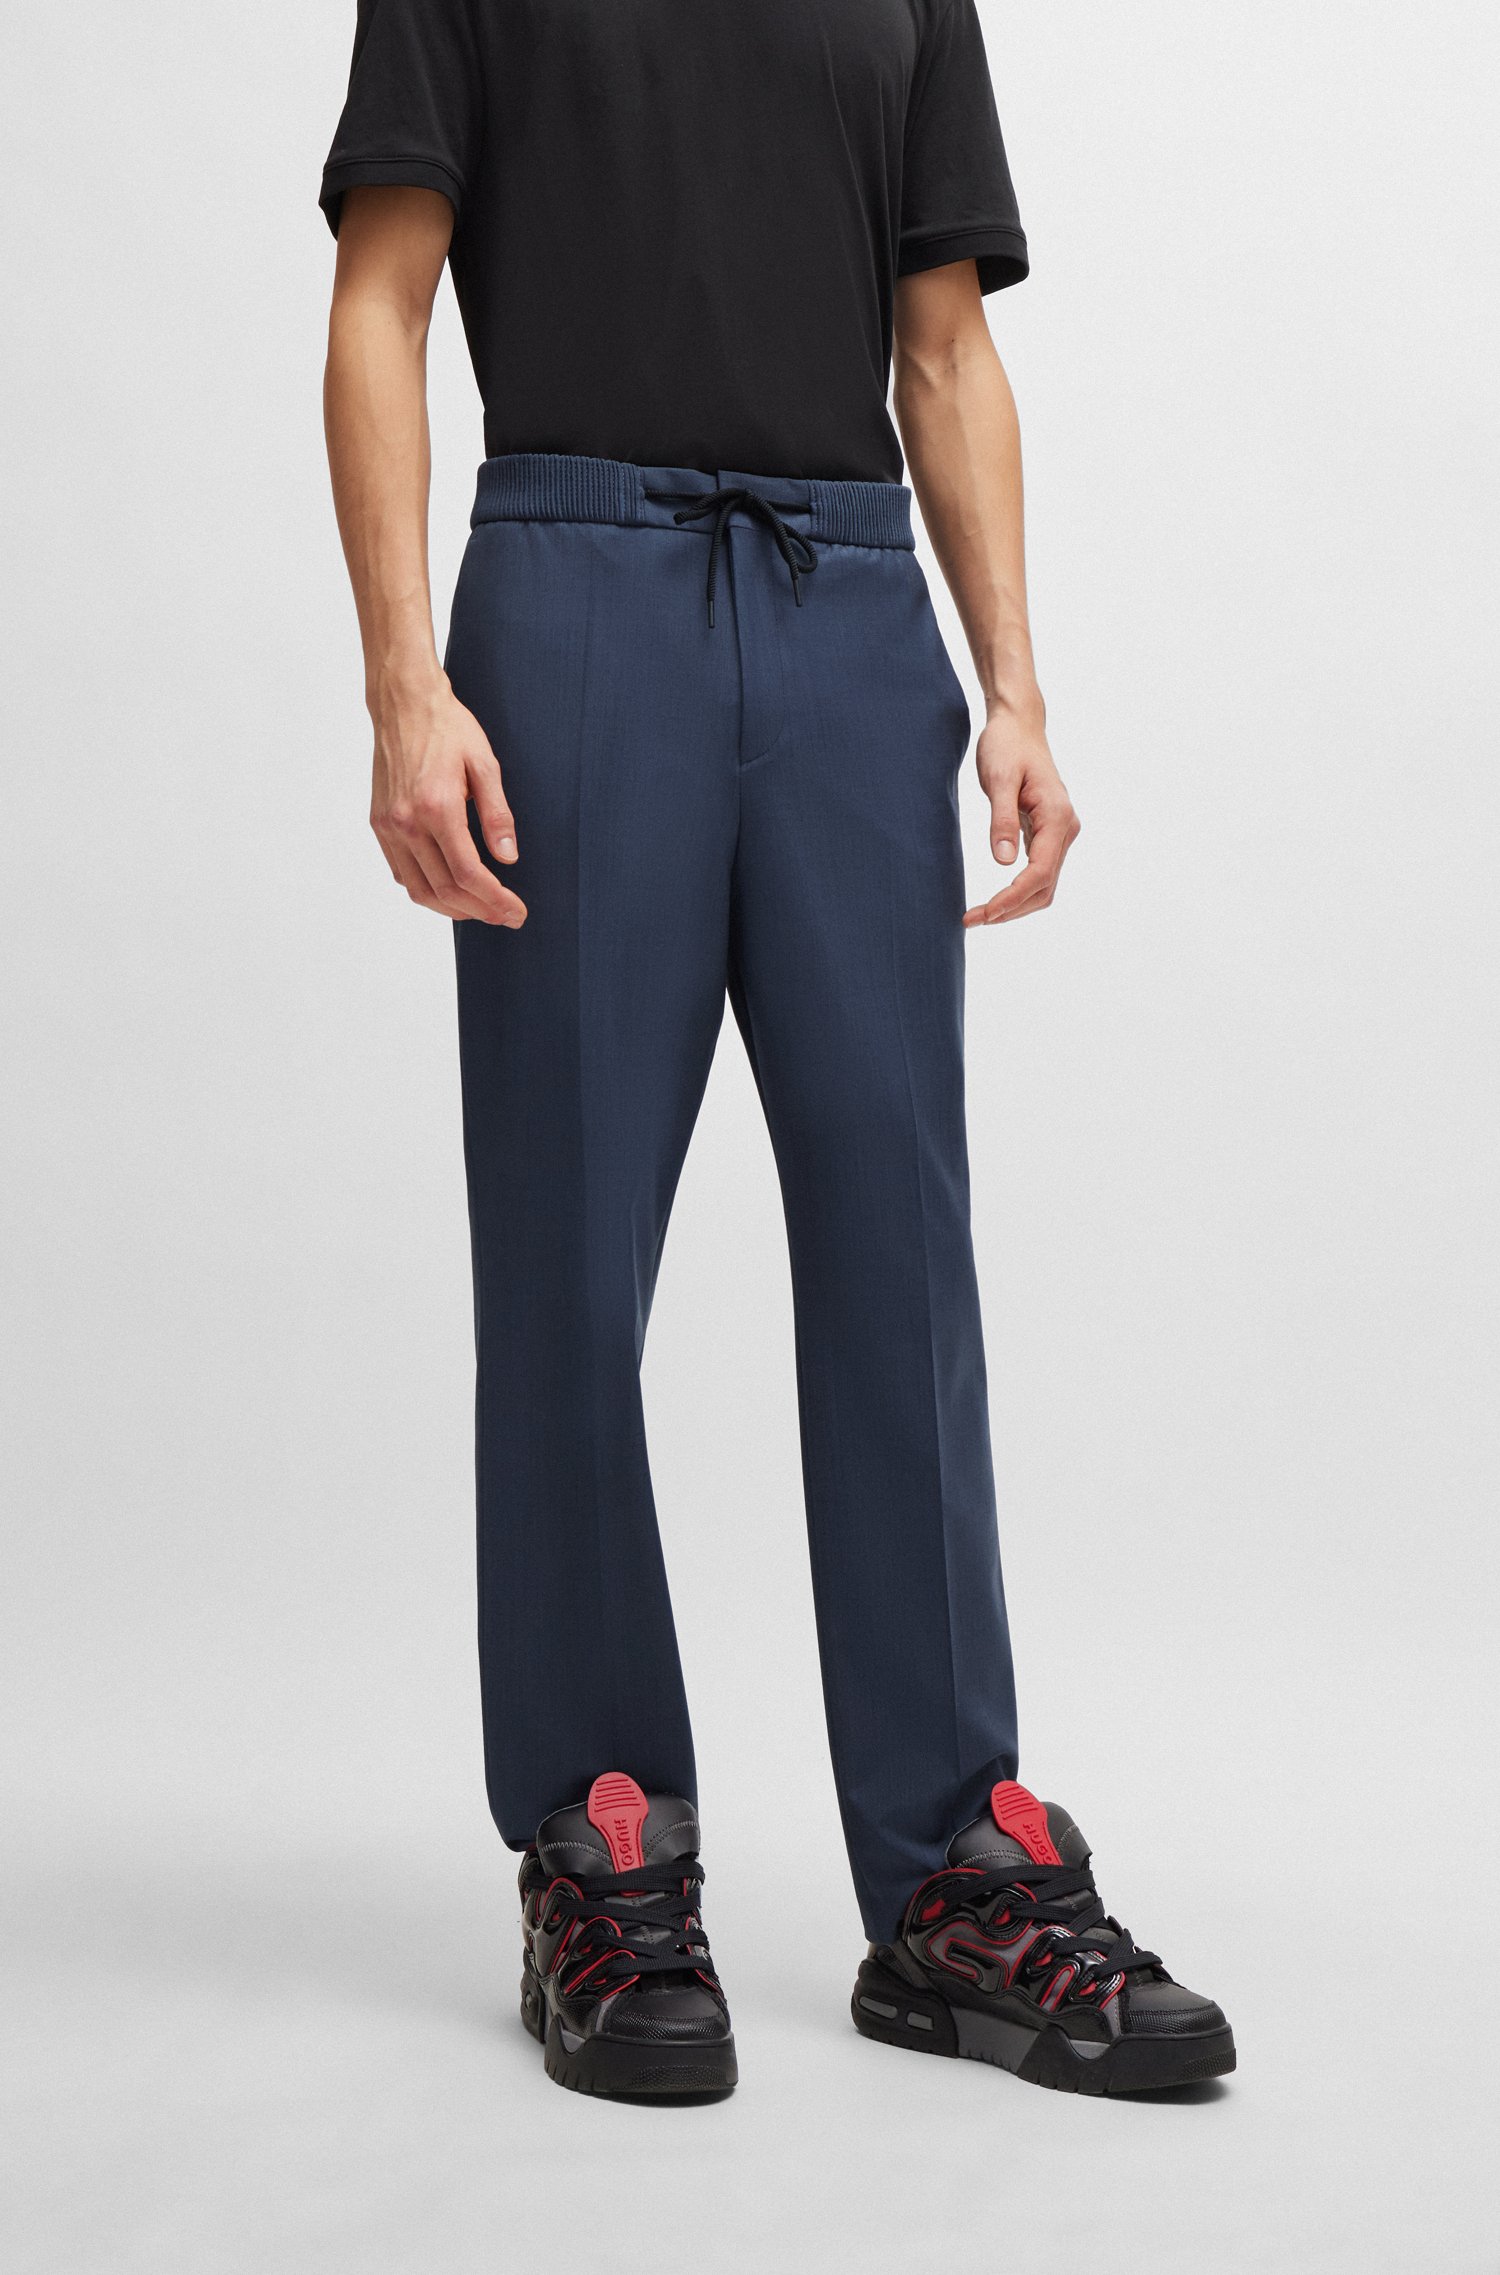 Pantalones extra slim fit en material con apariencia de mohair